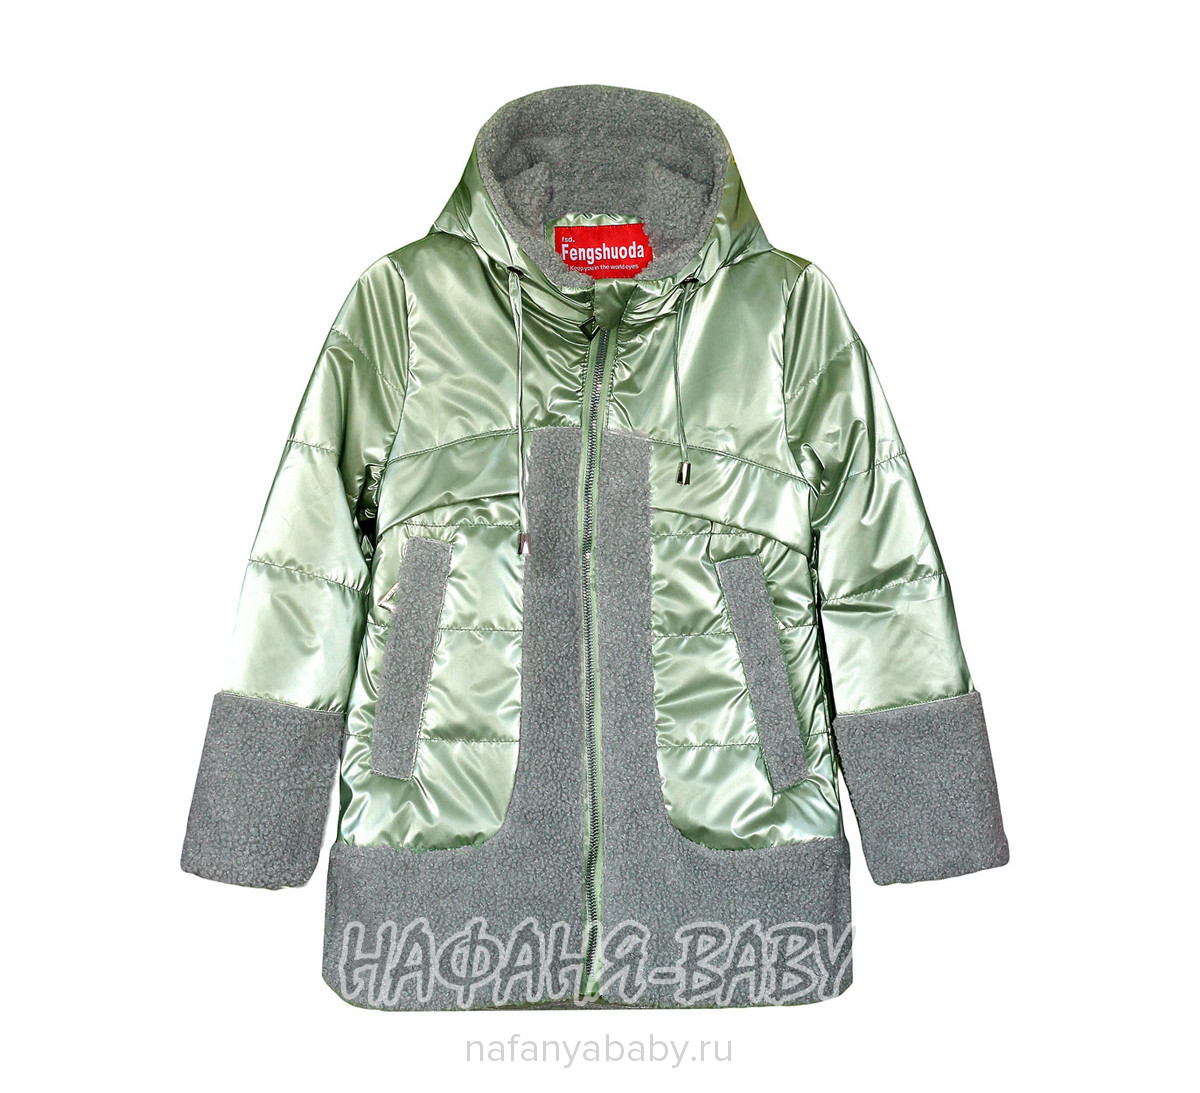 Детская демисезонная куртка FSD, купить в интернет магазине Нафаня. арт: 1018-1.